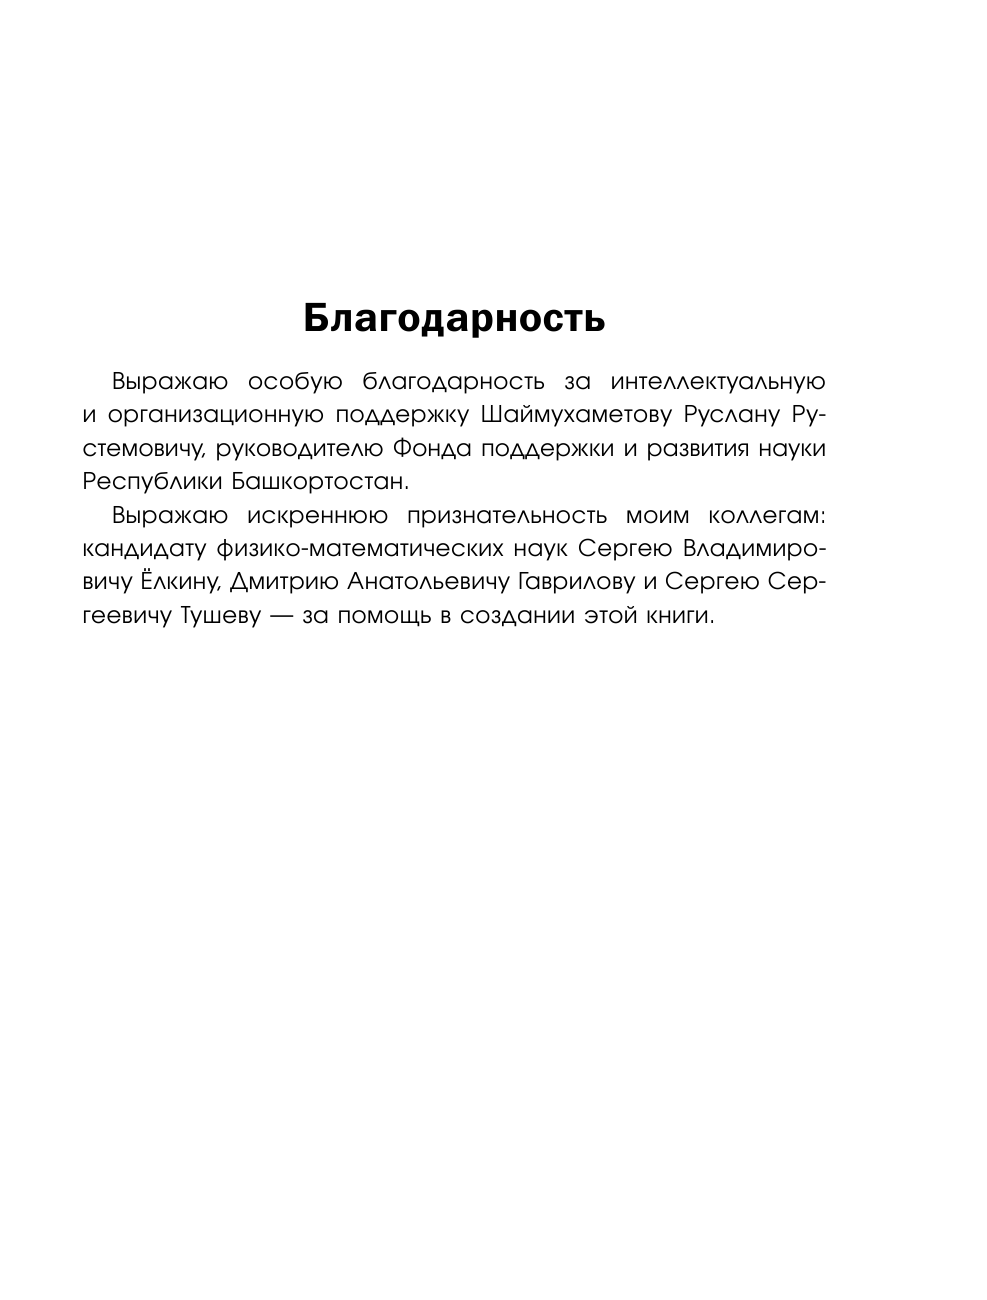 Вассерман Анатолий Александрович, Латыпов Нурали Нурисламович 4.51 стратагемы для Путина - страница 3